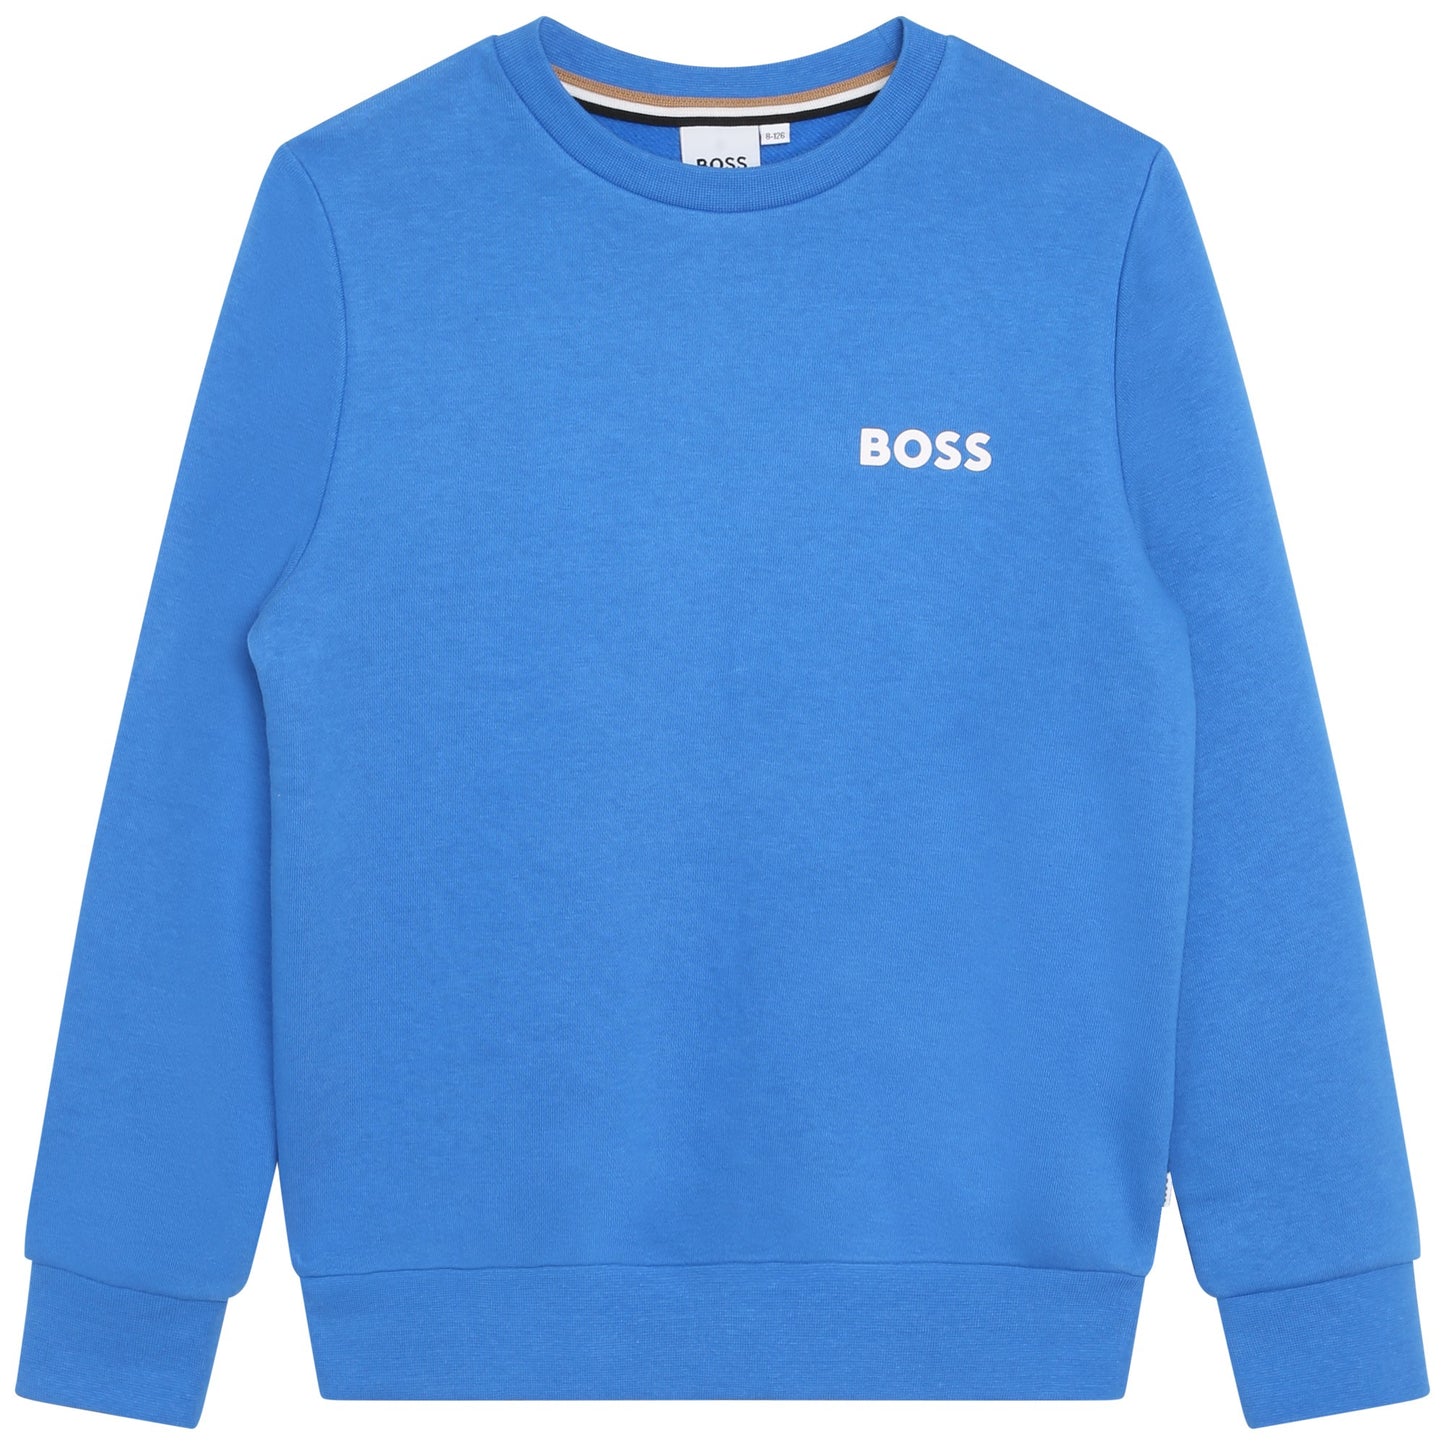 Hugo Boss Boys Blue Sweatshirt_J25Q12-846